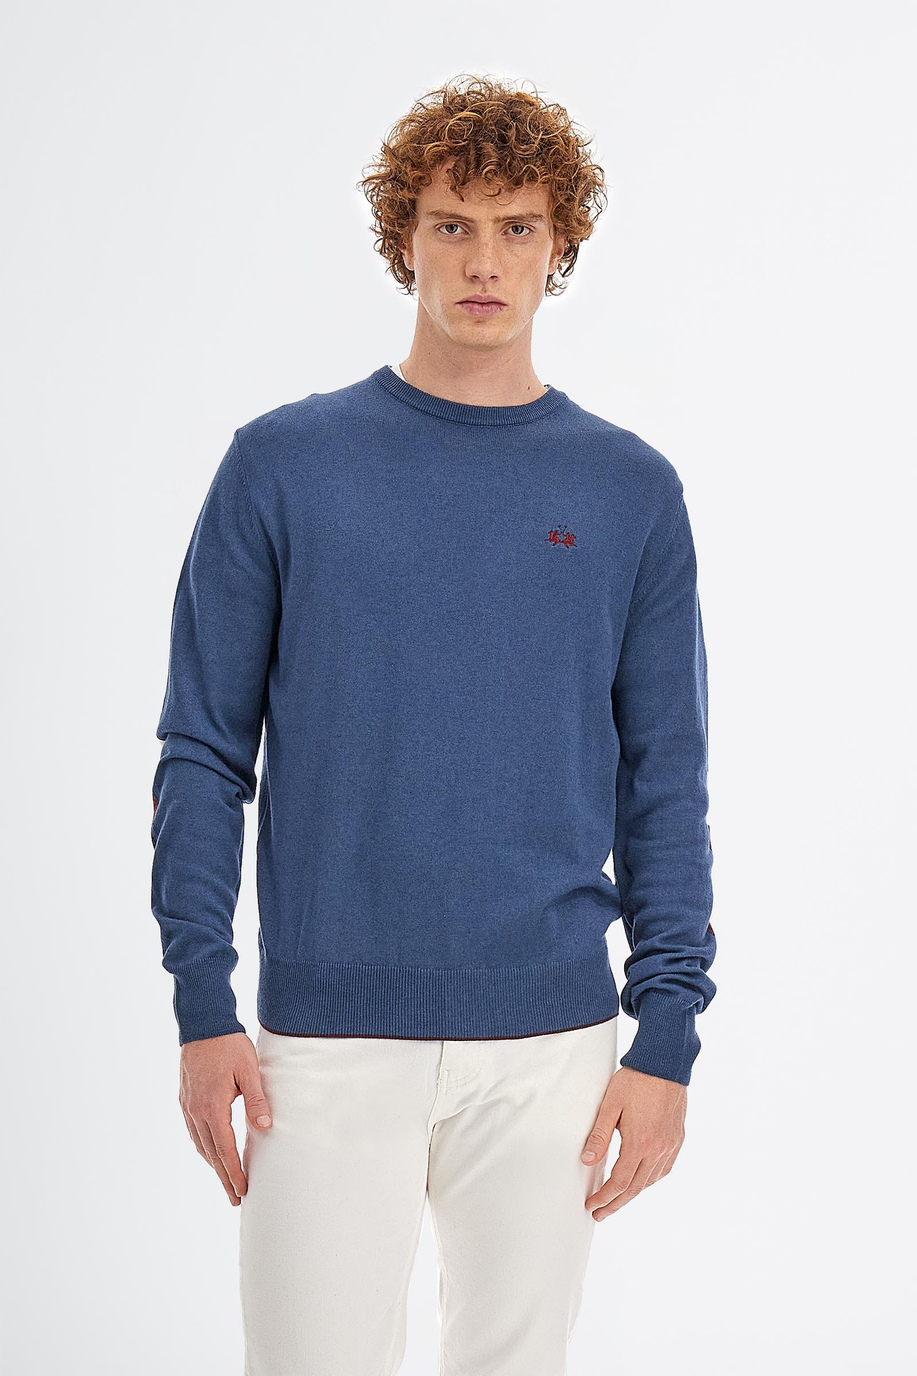 Maglia tricot da uomo a maniche lunghe in cotone misto lana regular fit girocollo - Maglie | La Martina - Official Online Shop